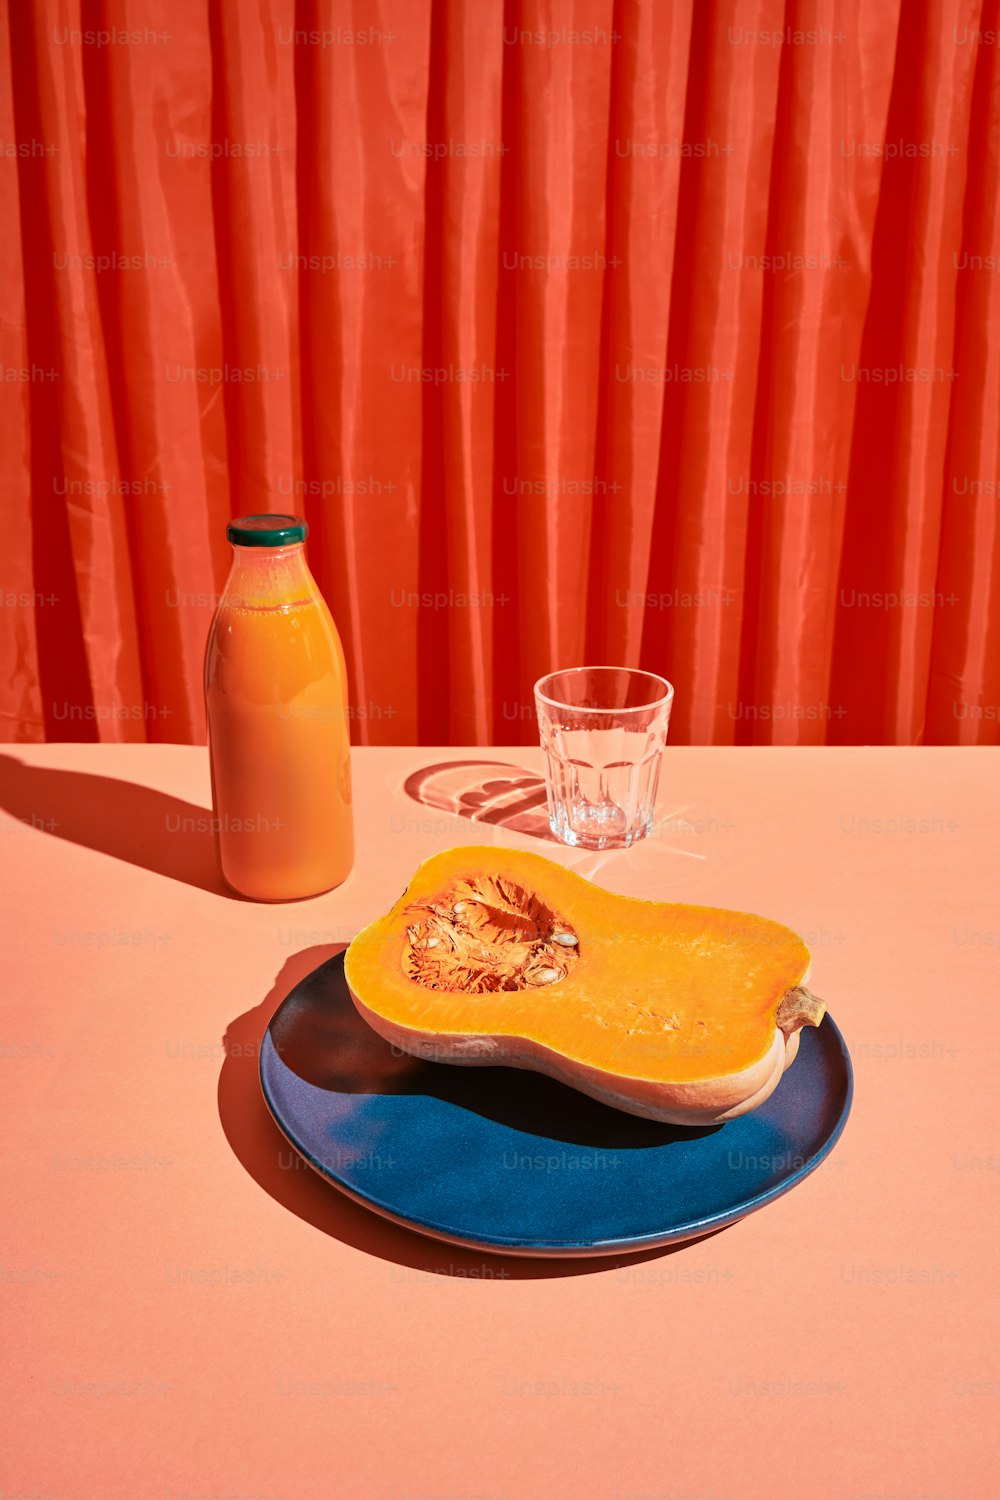 un vaso de jugo de naranja junto a una calabaza con mantequilla